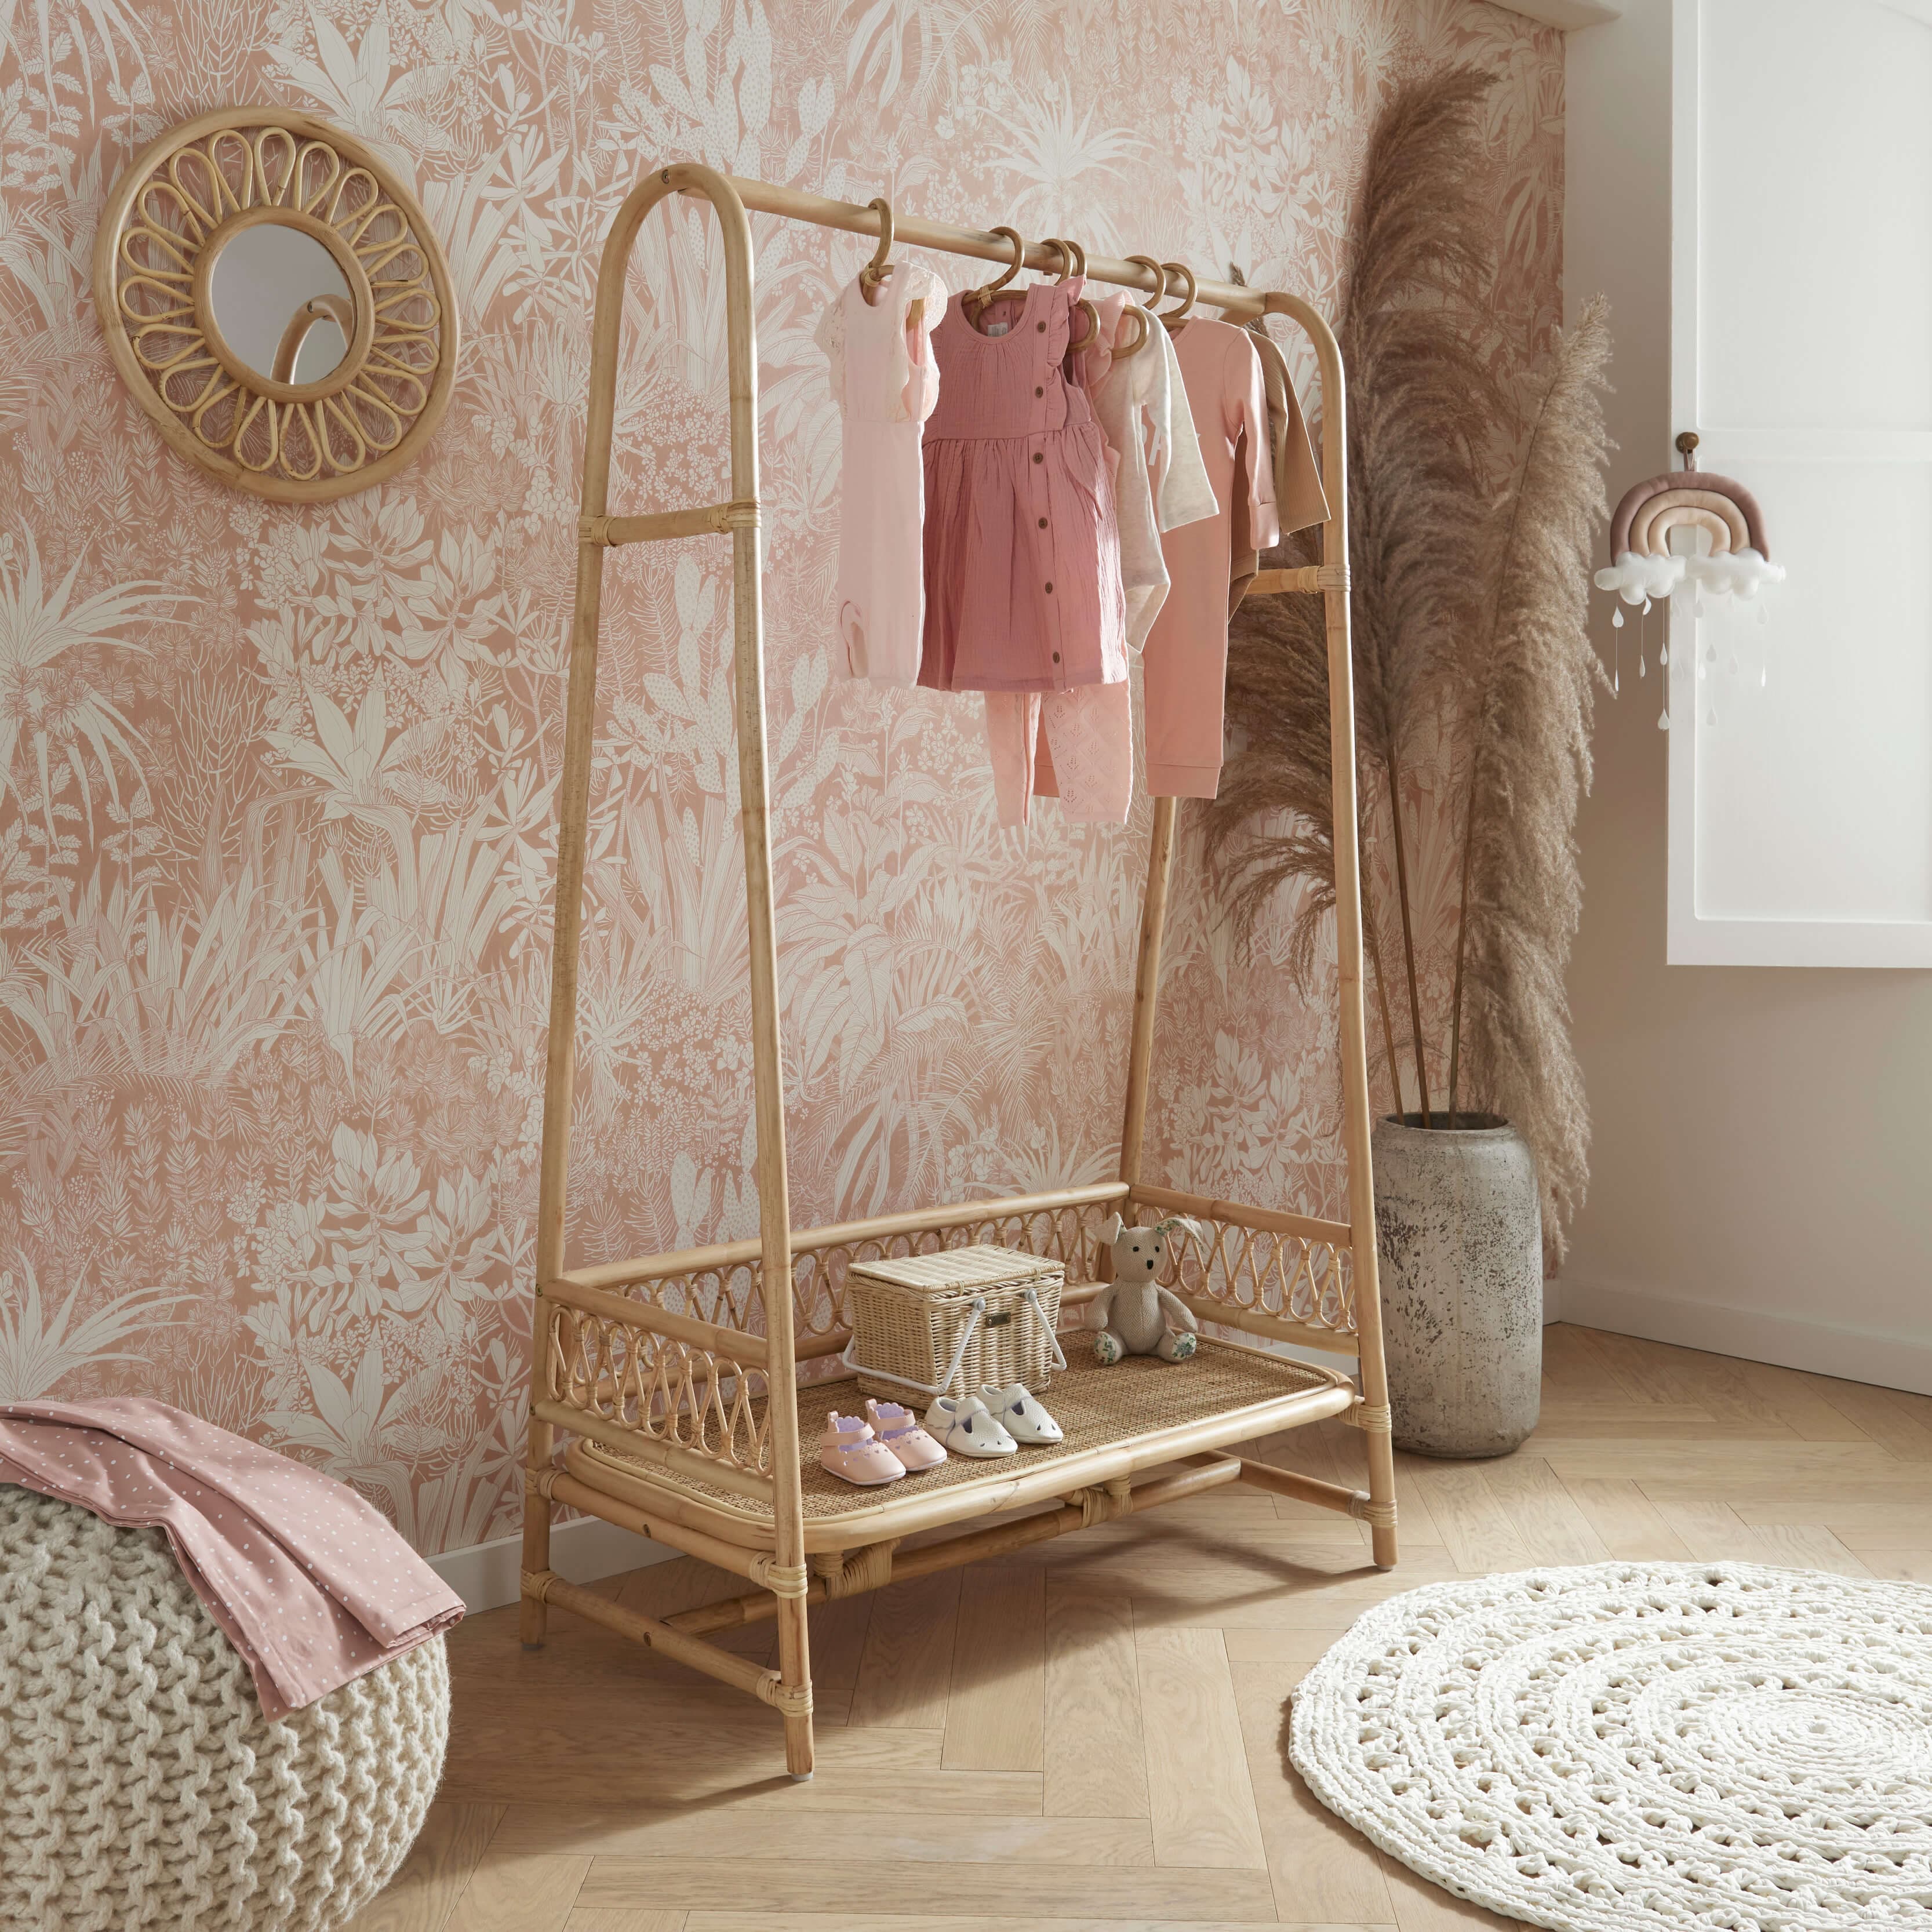 CuddleCo Nursery Room Sets CuddleCo Aria Crib & Clothes Rail Room Set - Rattan FRN/CUD/151168